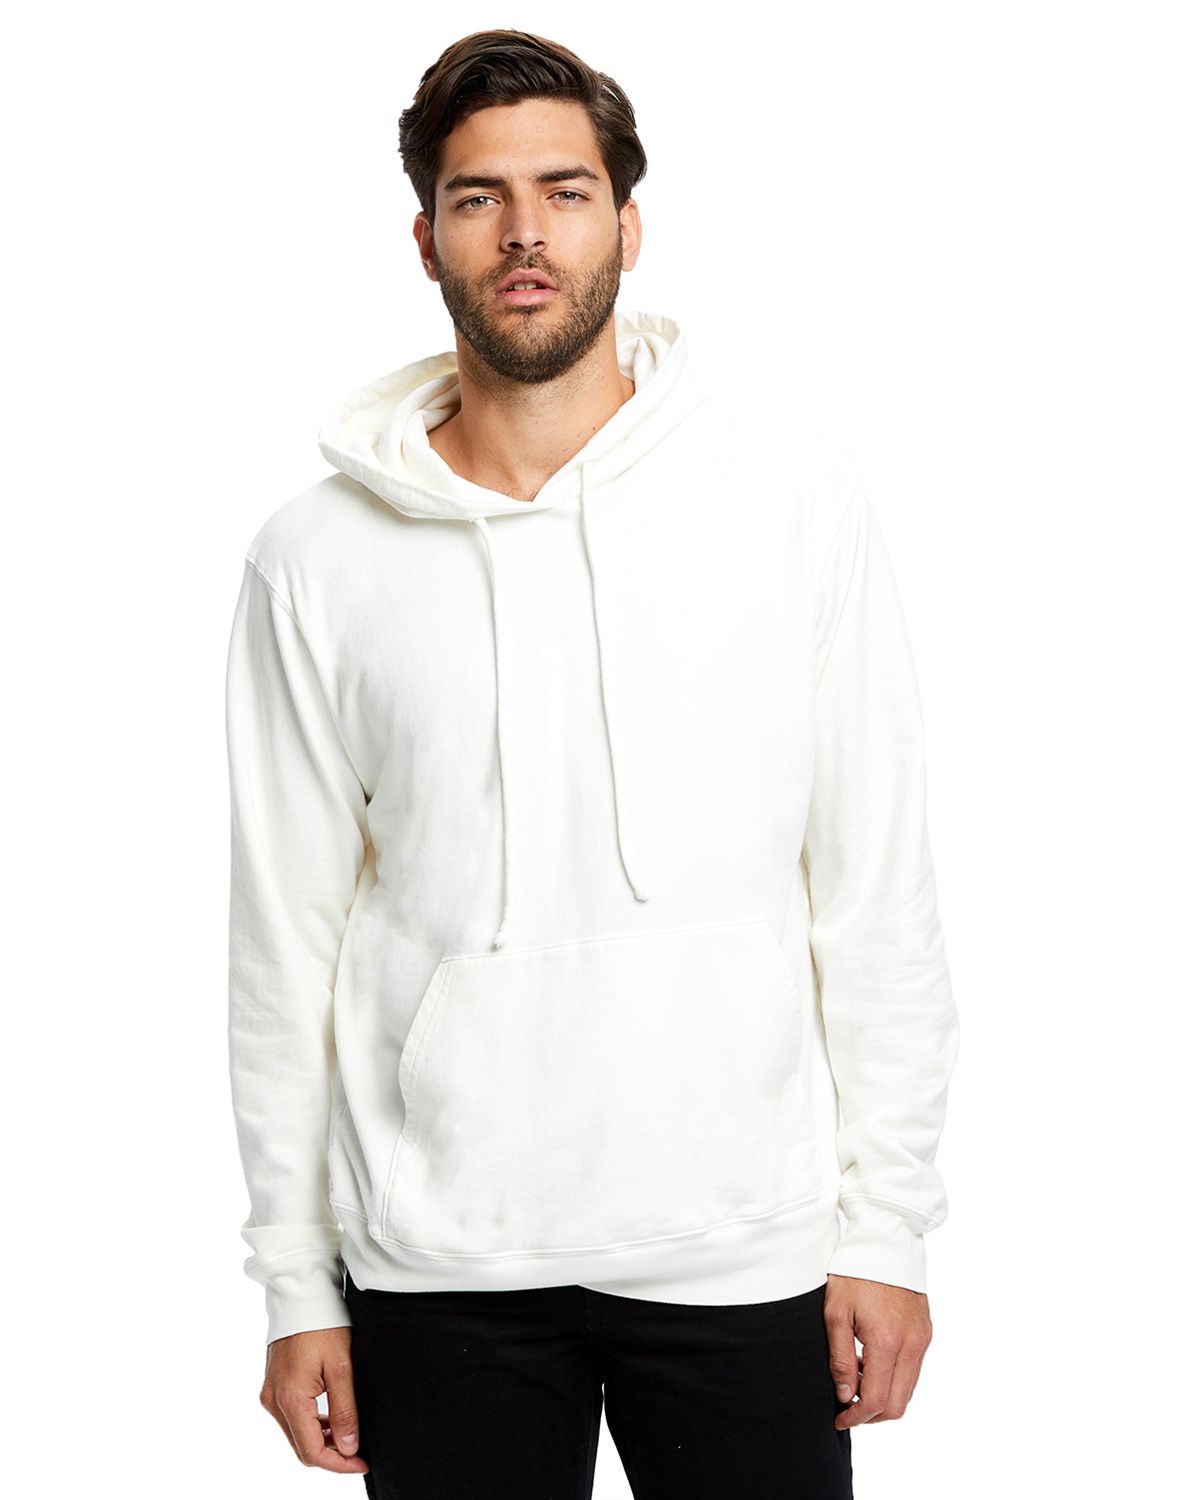 tagless hoodies wholesale